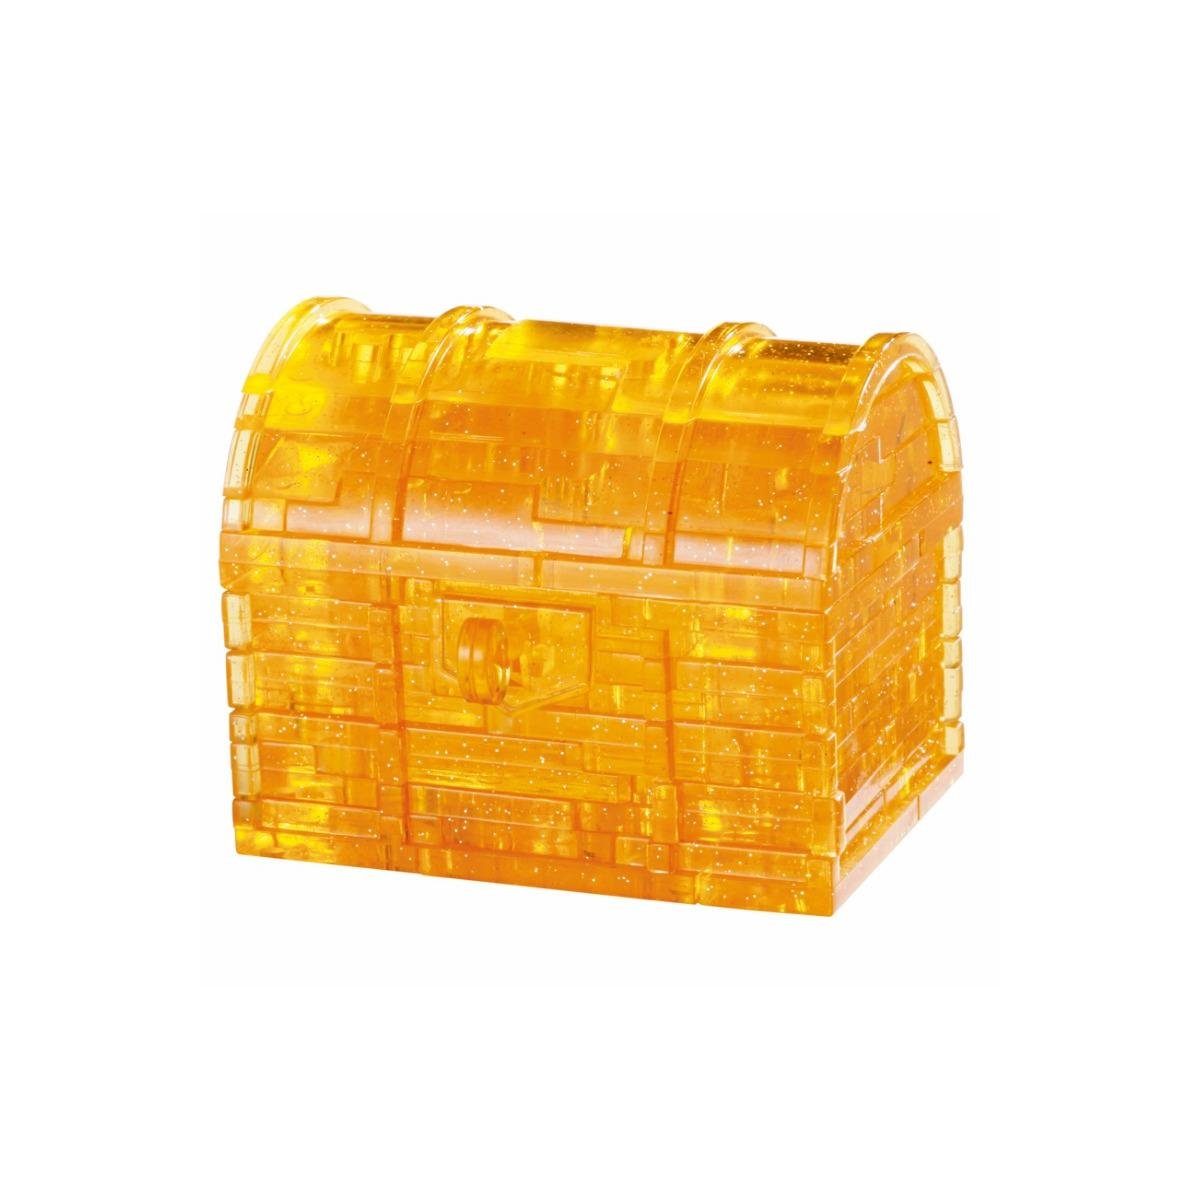 HCM KINZEL 3D-Puzzle HCM03007 - Crystal Puzzle: 3D Schatztruhe - 52 Teile..., 52 Puzzleteile